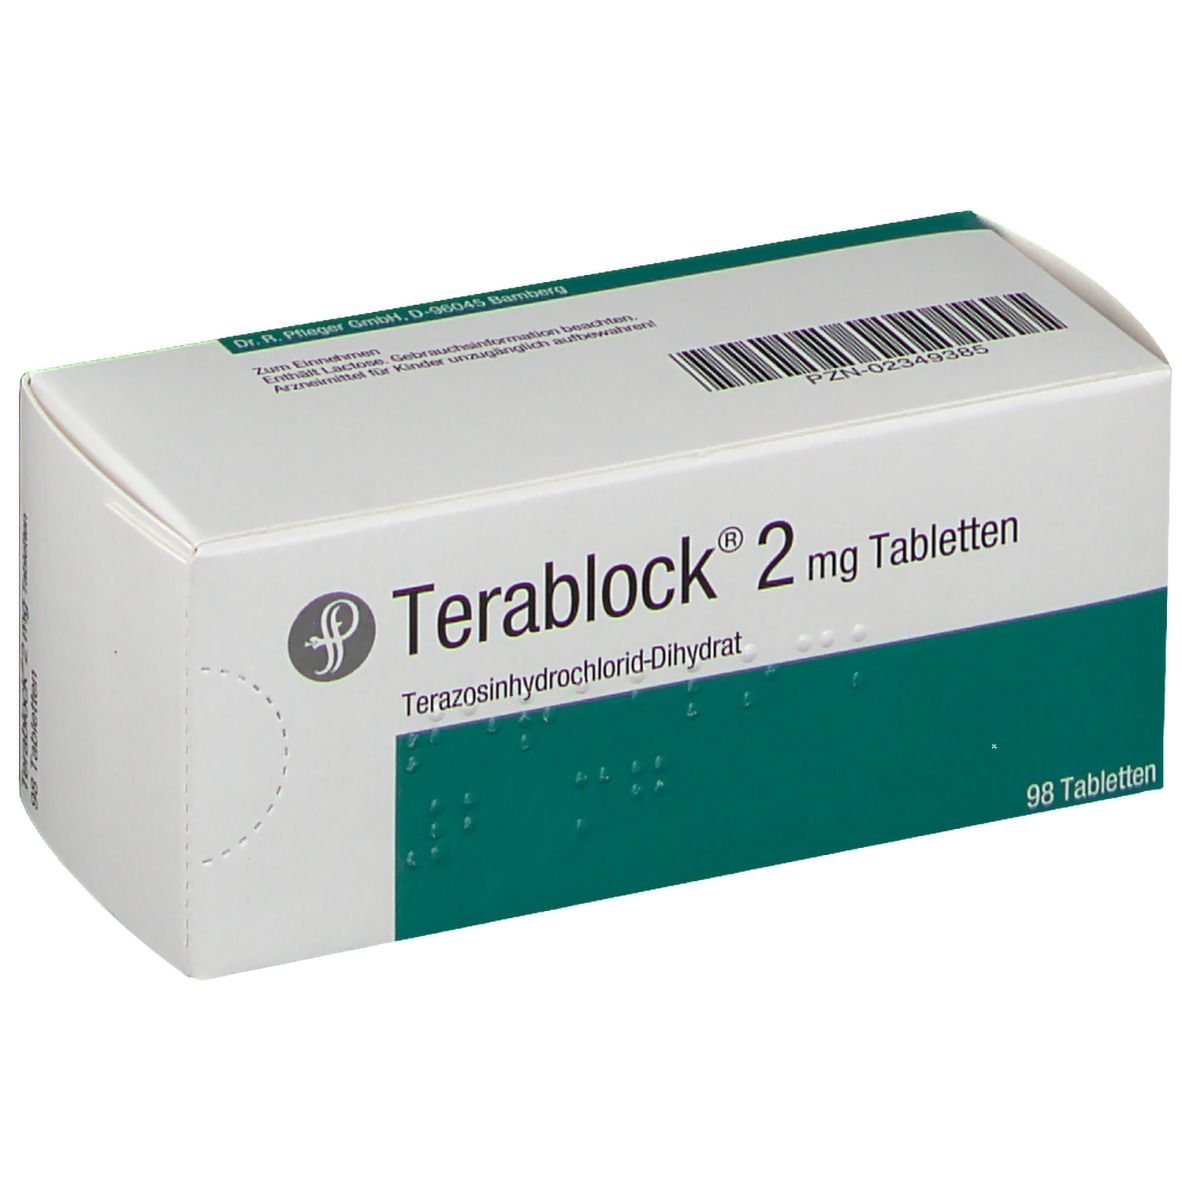 Terablock® 2 mg